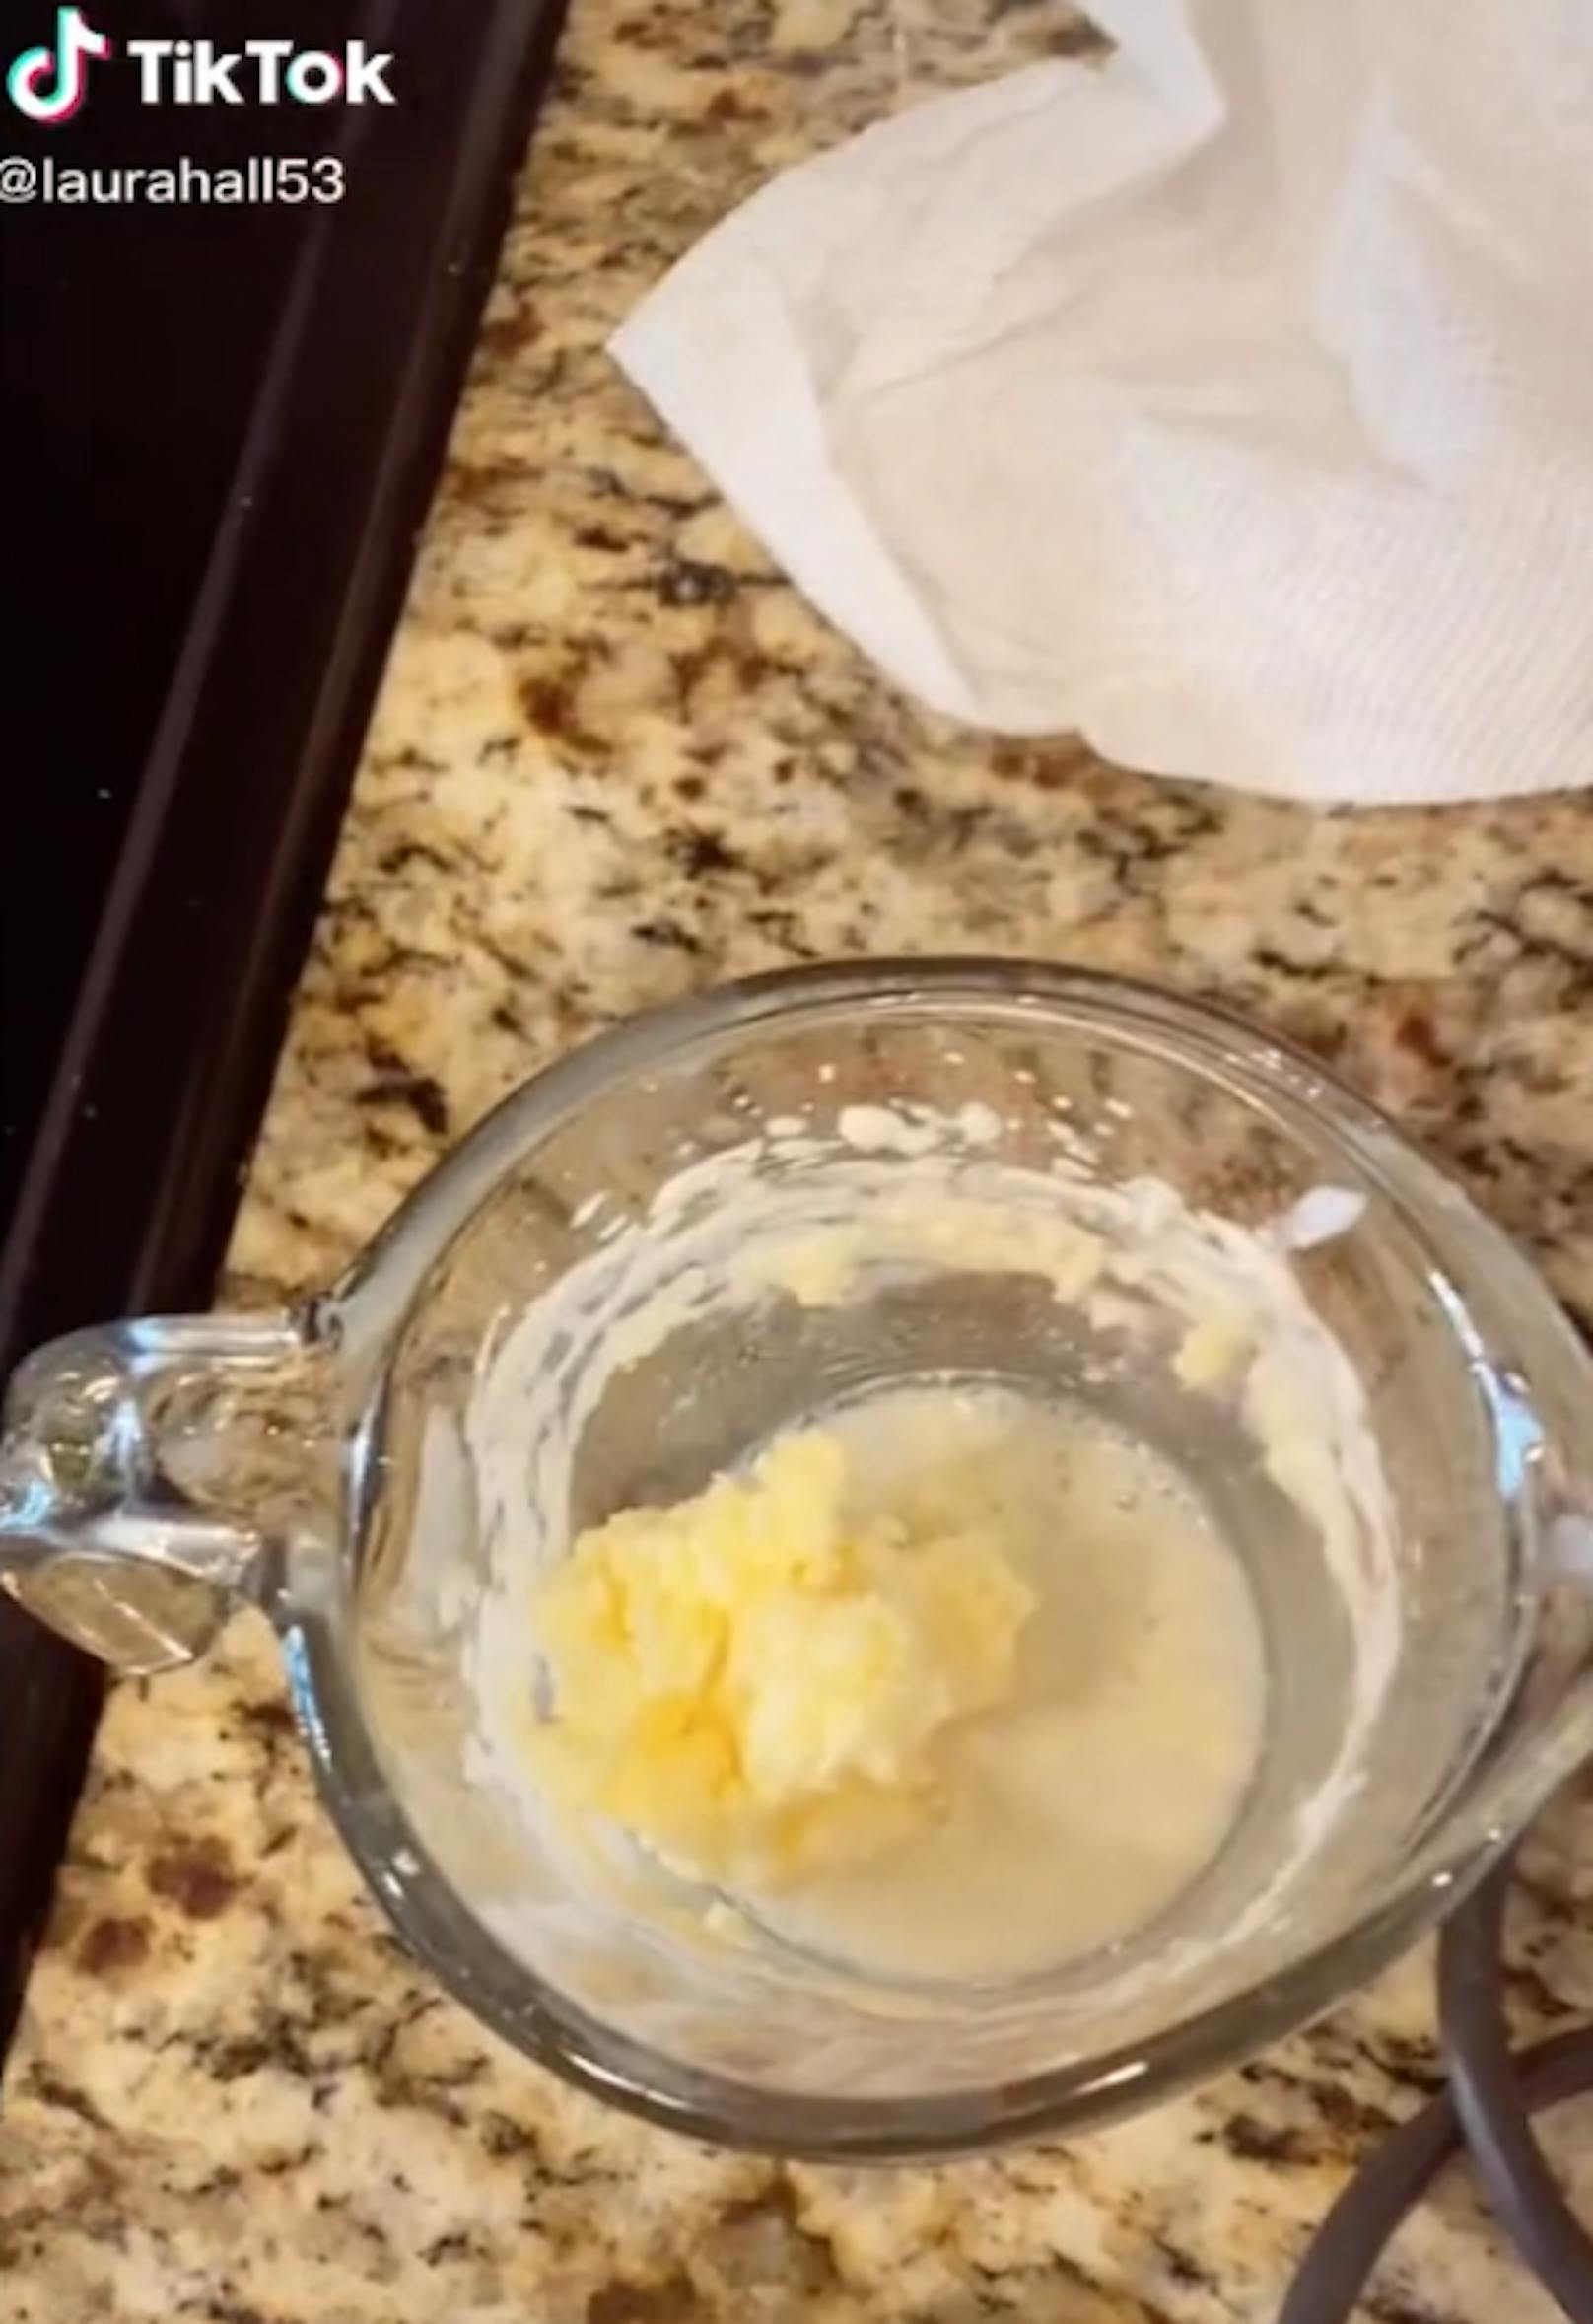 Das Ergebnis: Butter aus Muttermilch.